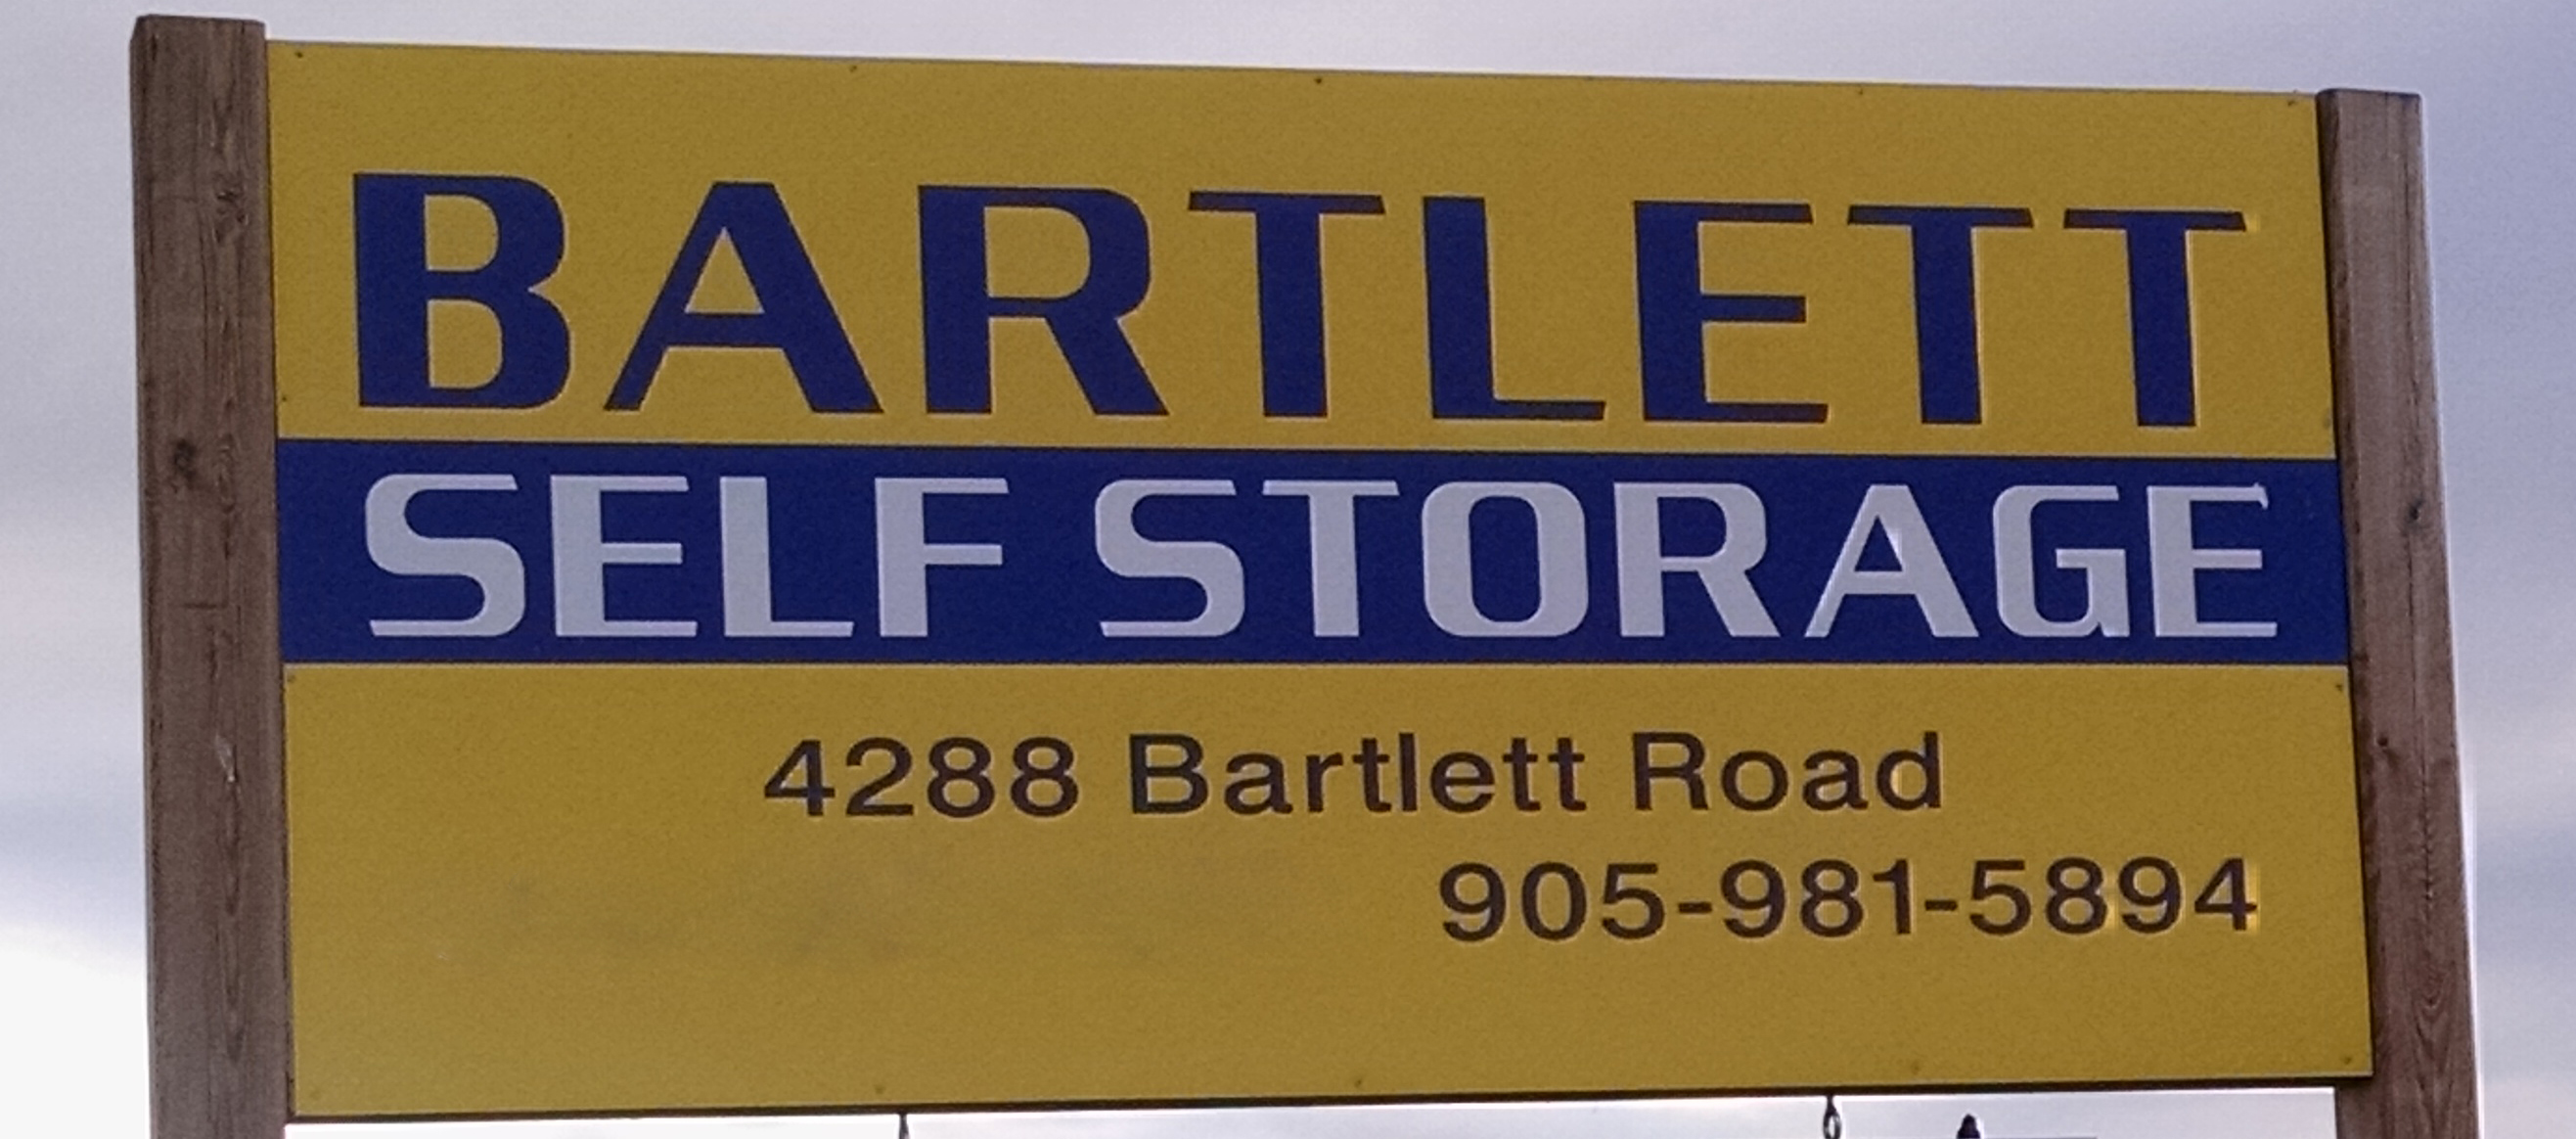 Bartlett Self Storage